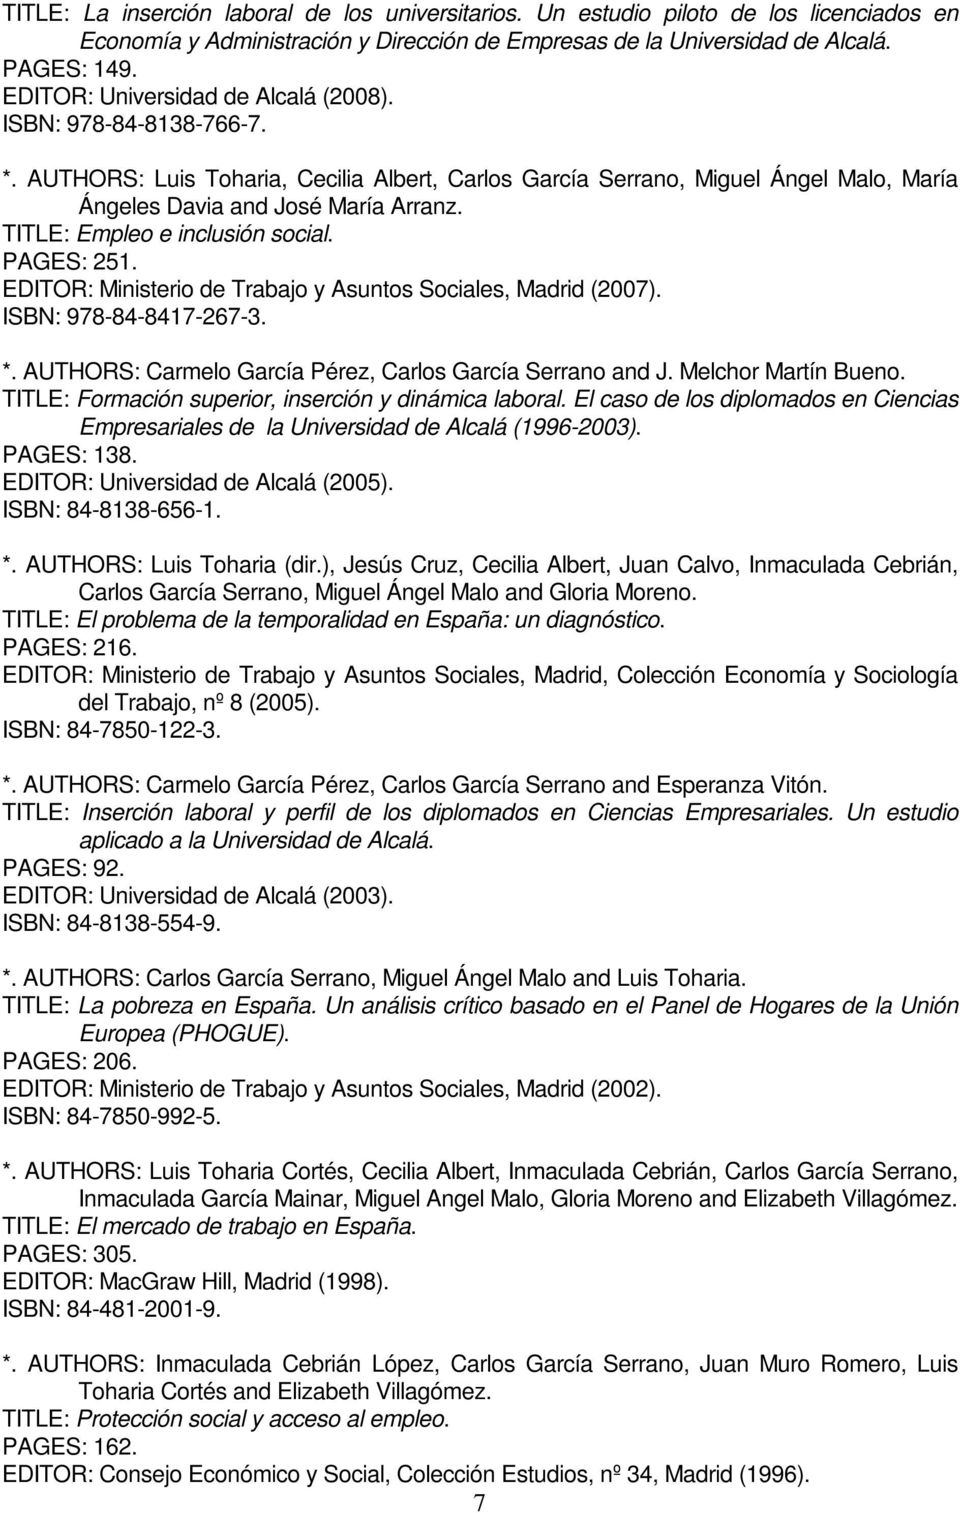 TITLE: Empleo e inclusión social. PAGES: 251. EDITOR: Ministerio de Trabajo y Asuntos Sociales, Madrid (2007). ISBN: 978-84-8417-267-3. *. AUTHORS: Carmelo García Pérez, Carlos García Serrano and J.